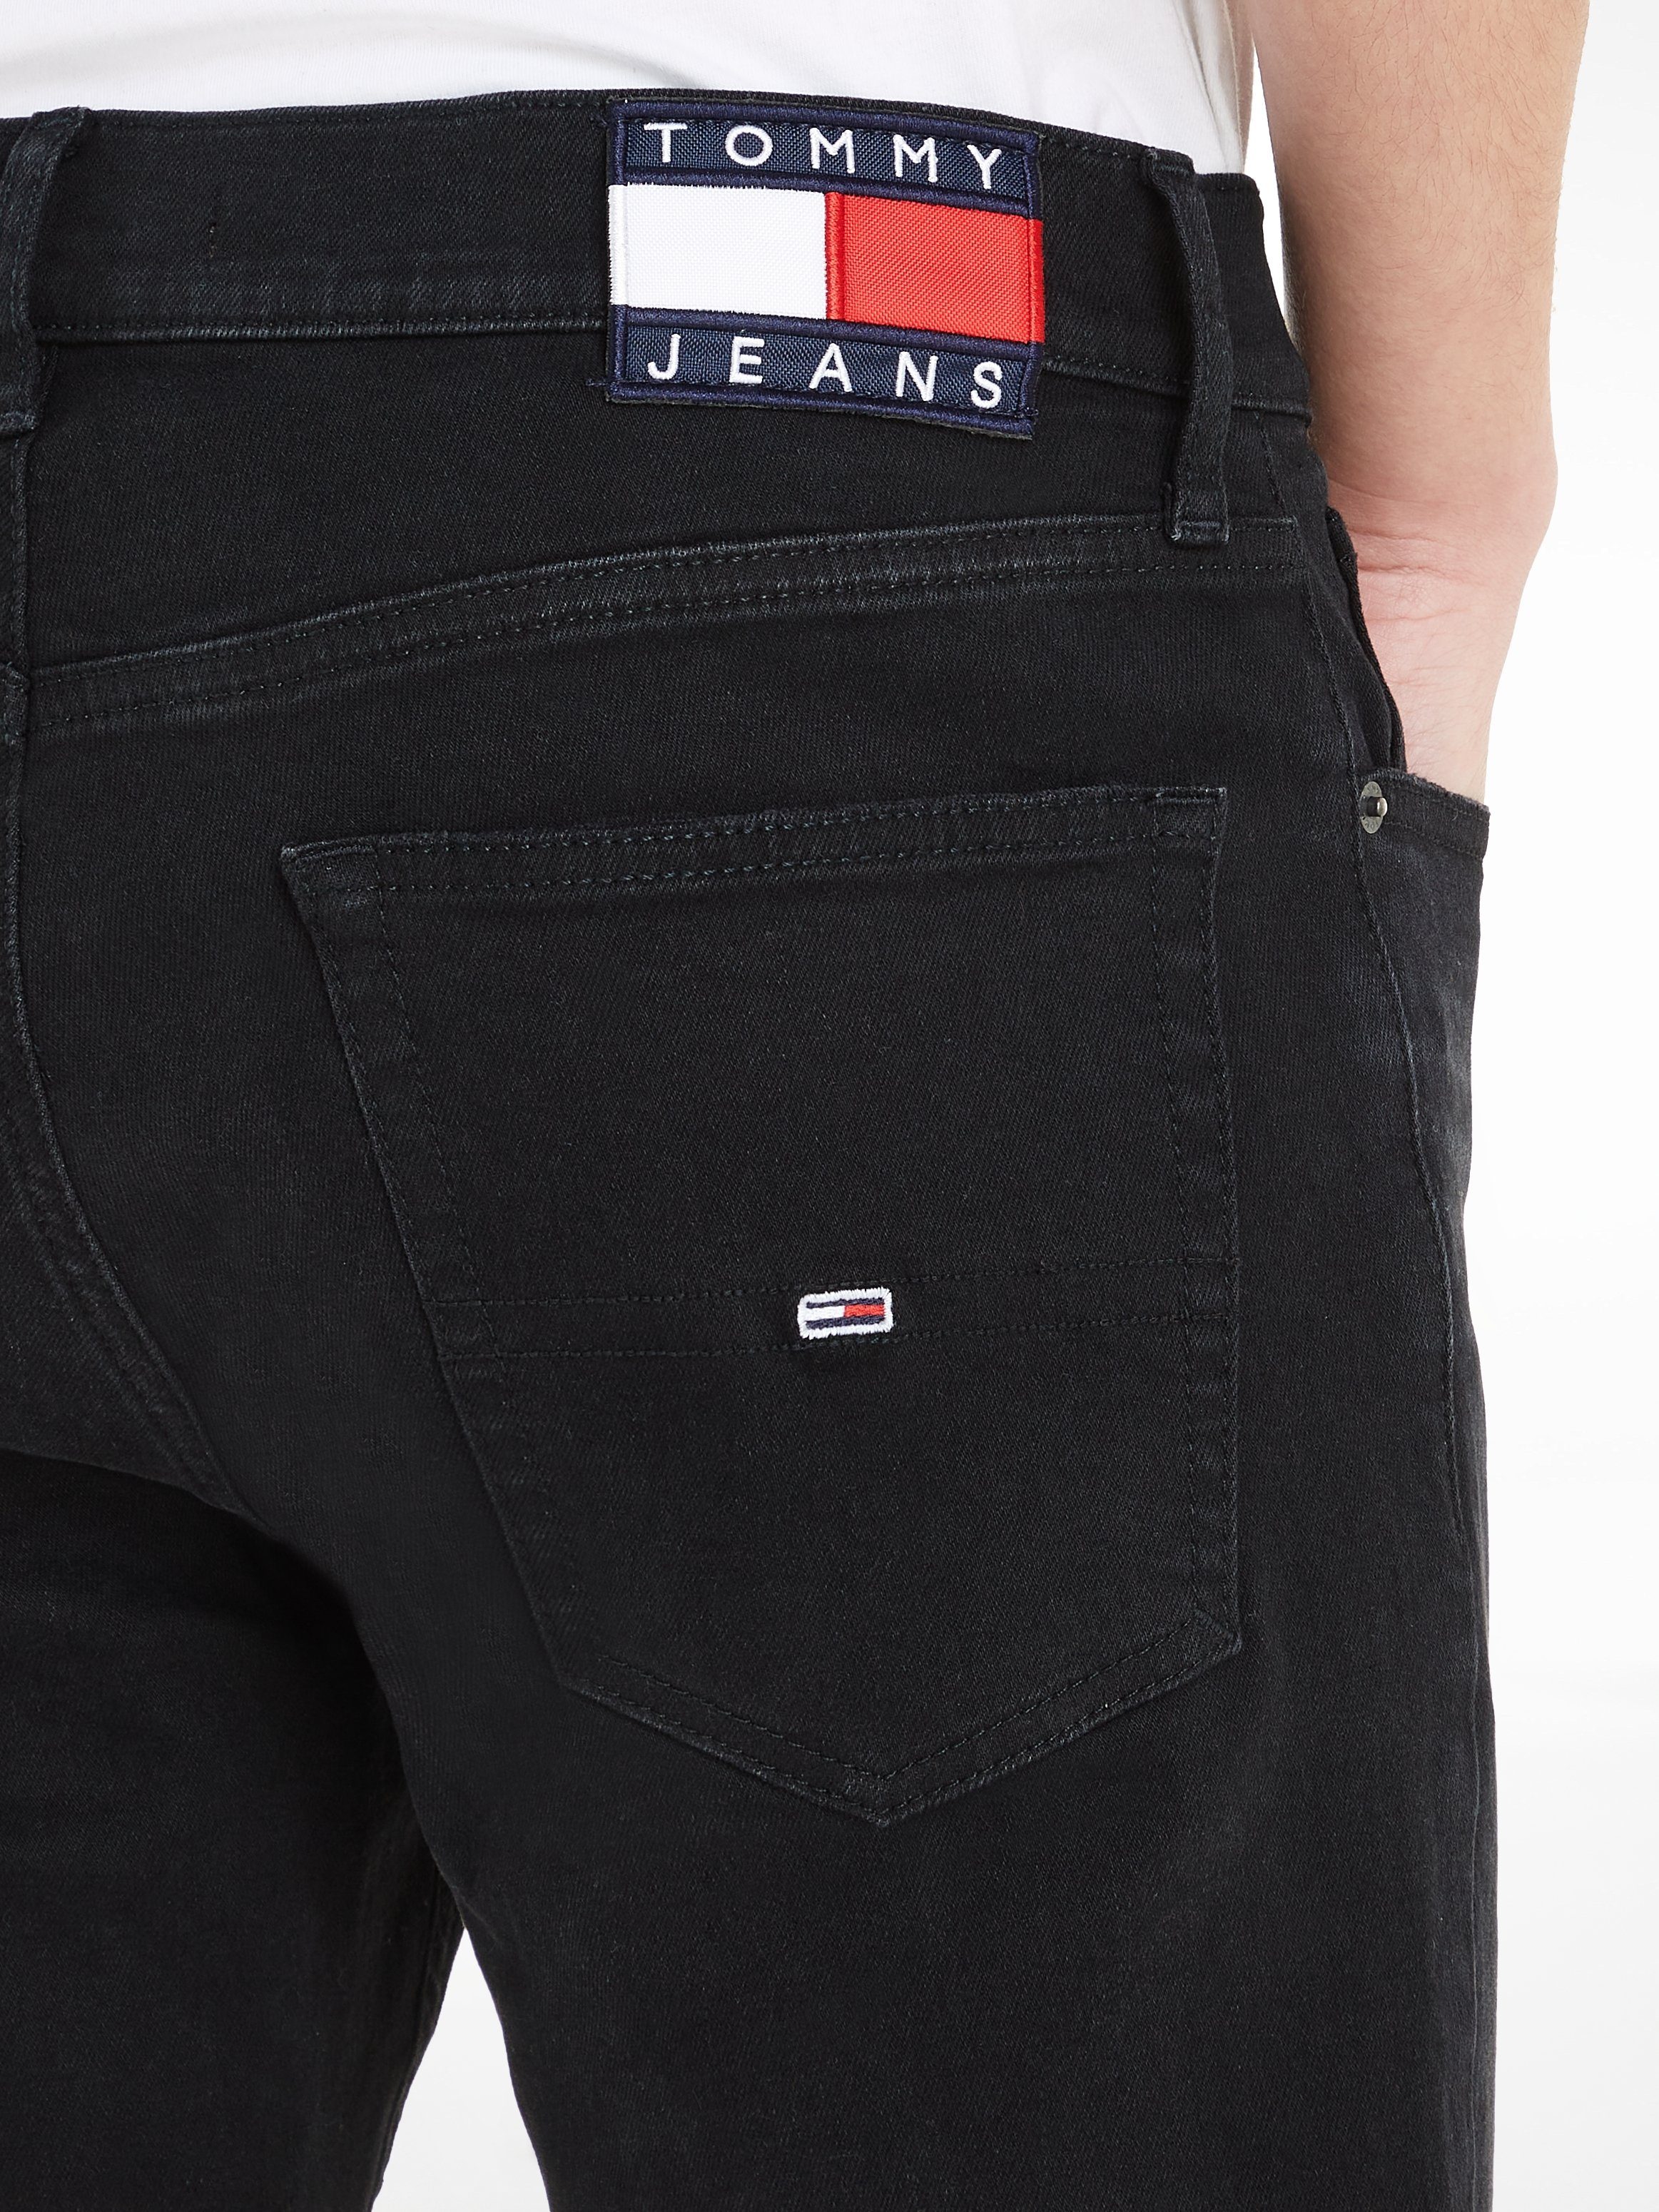 SLIM Jeans Tommy 5-Pocket-Jeans AUSTIN denim 1BZ black TPRD